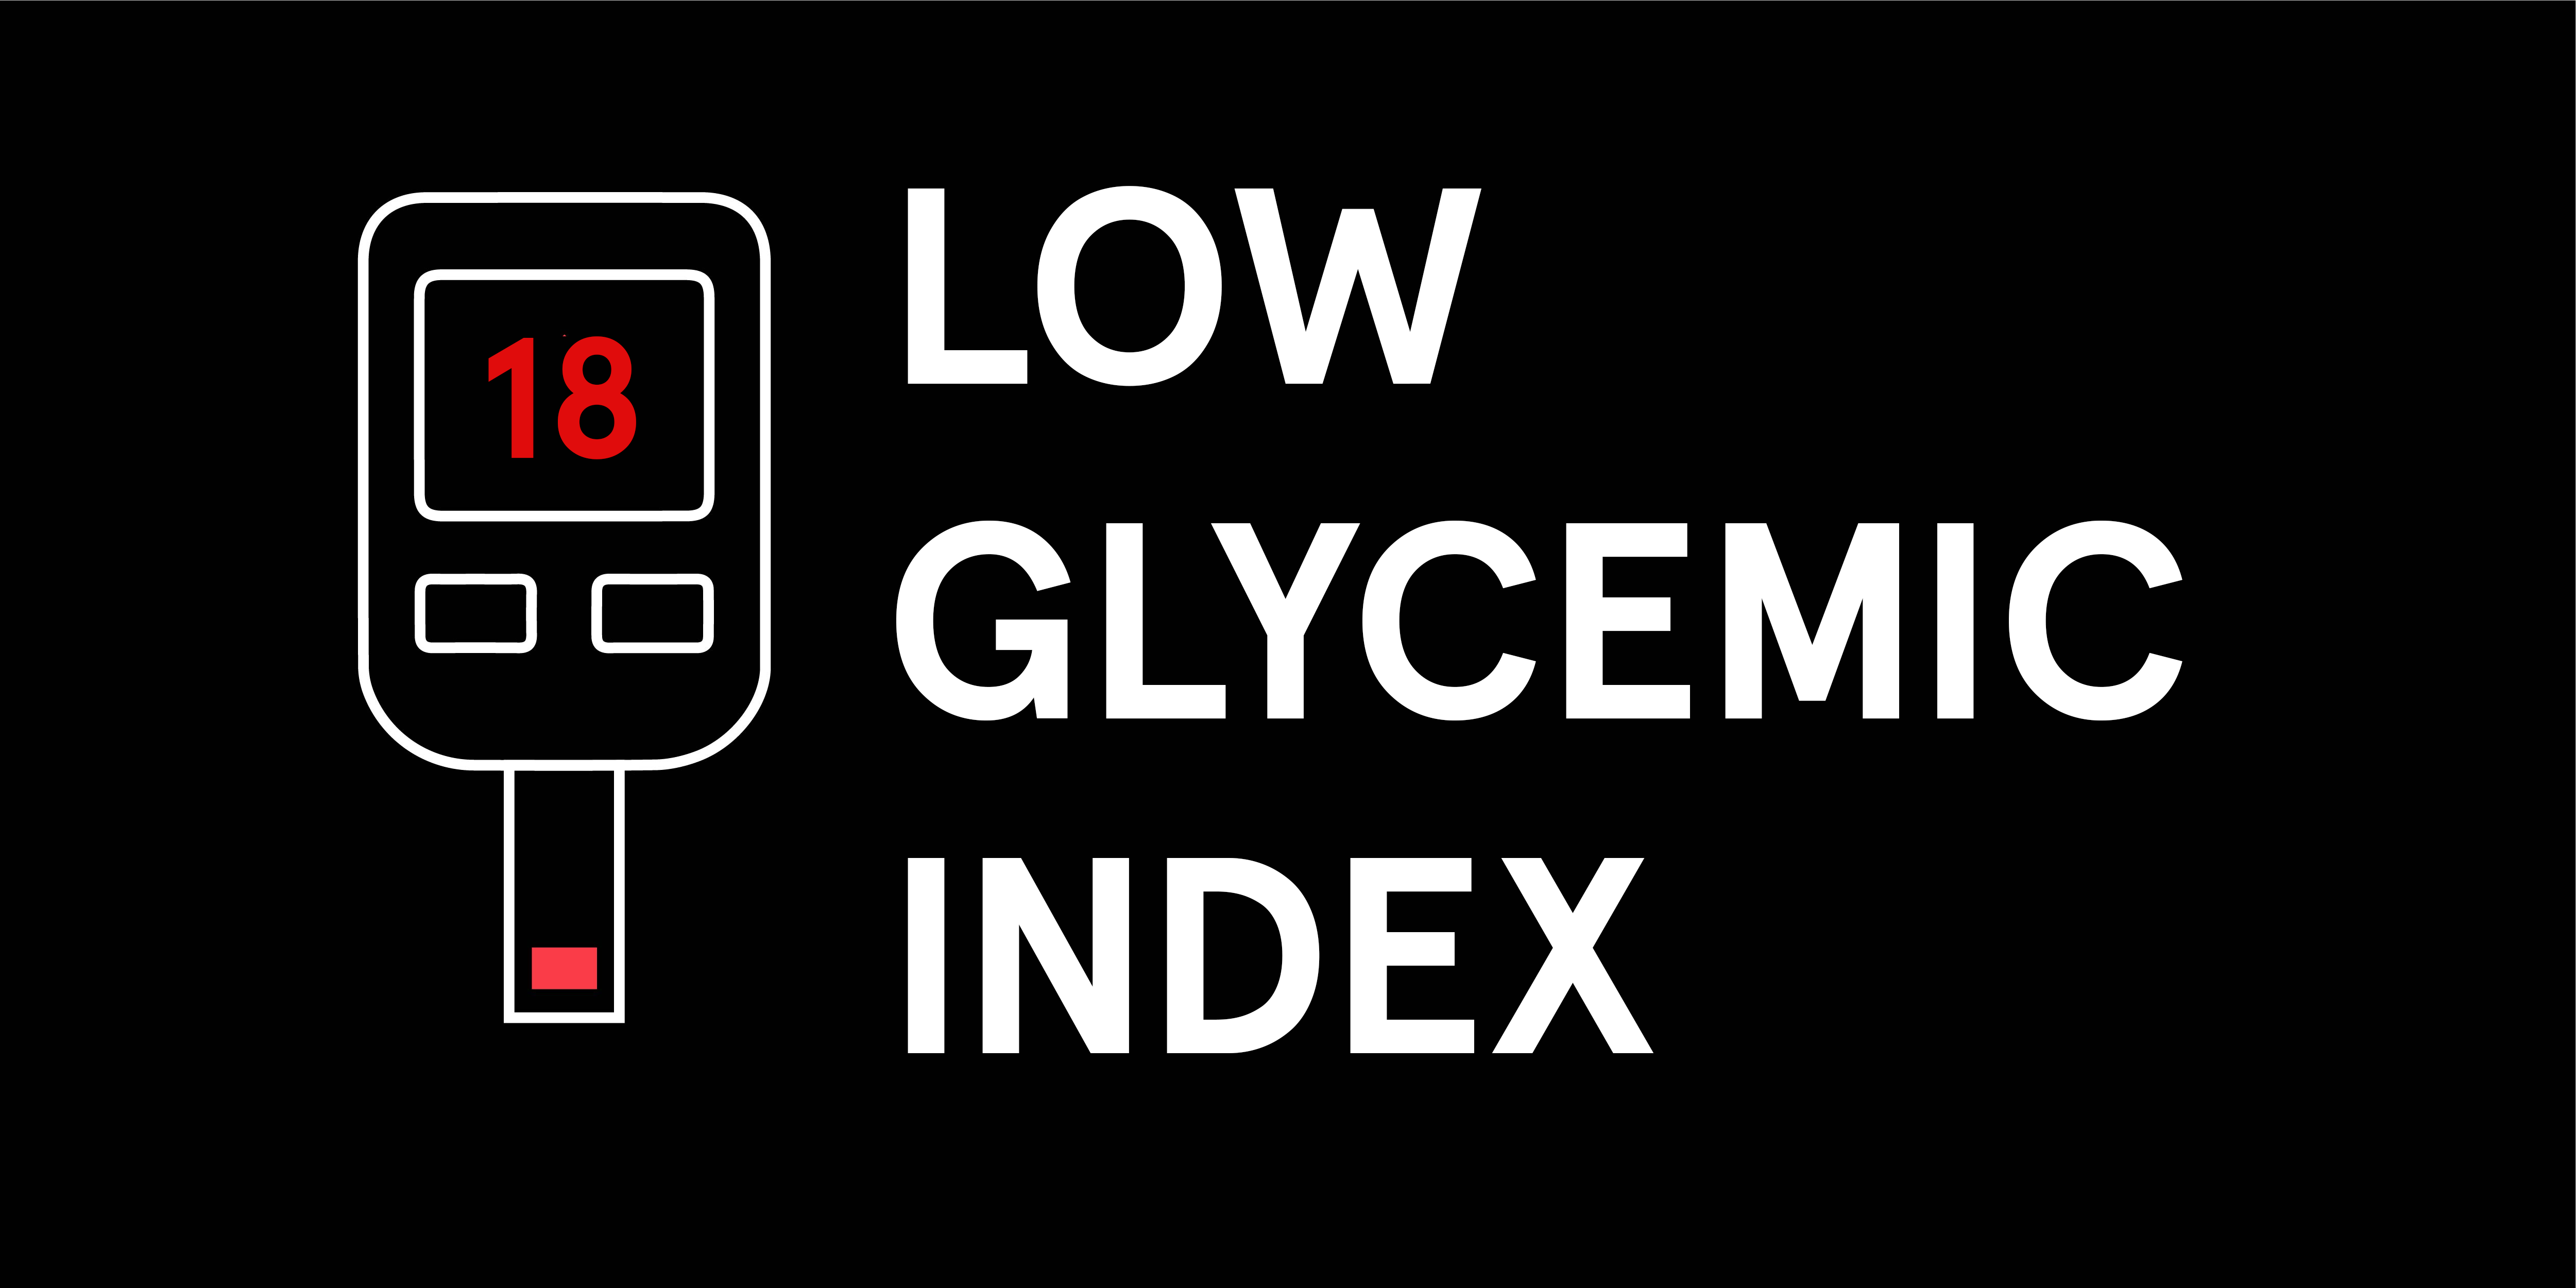 Soylent has a low Glycemic Index!